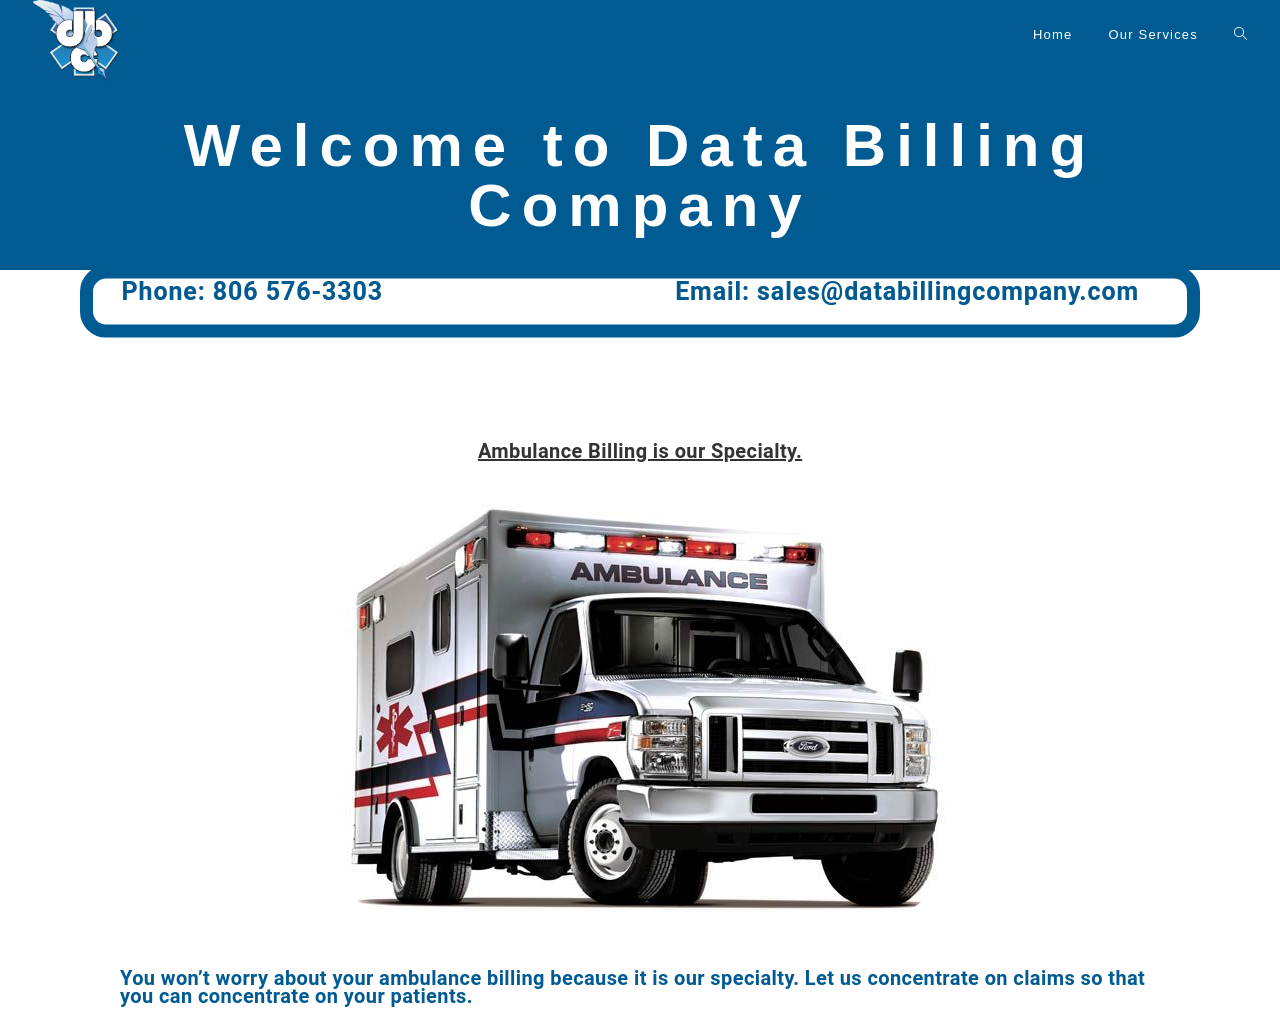 databillingcompany.com